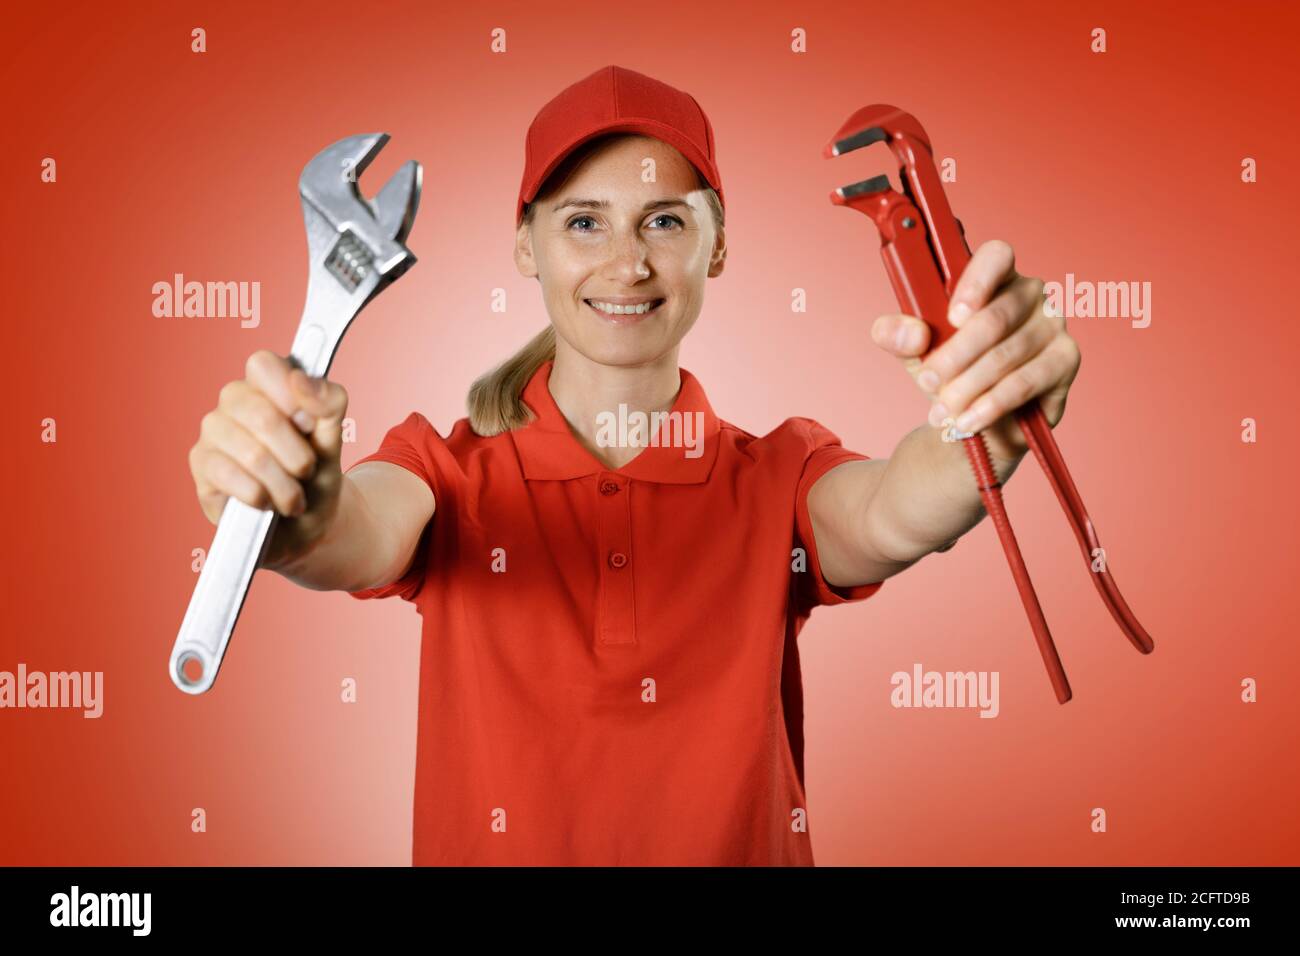 servicios de handyman - mujer práctica en uniforme rojo con reparación herramientas en las manos sobre fondo rojo Foto de stock